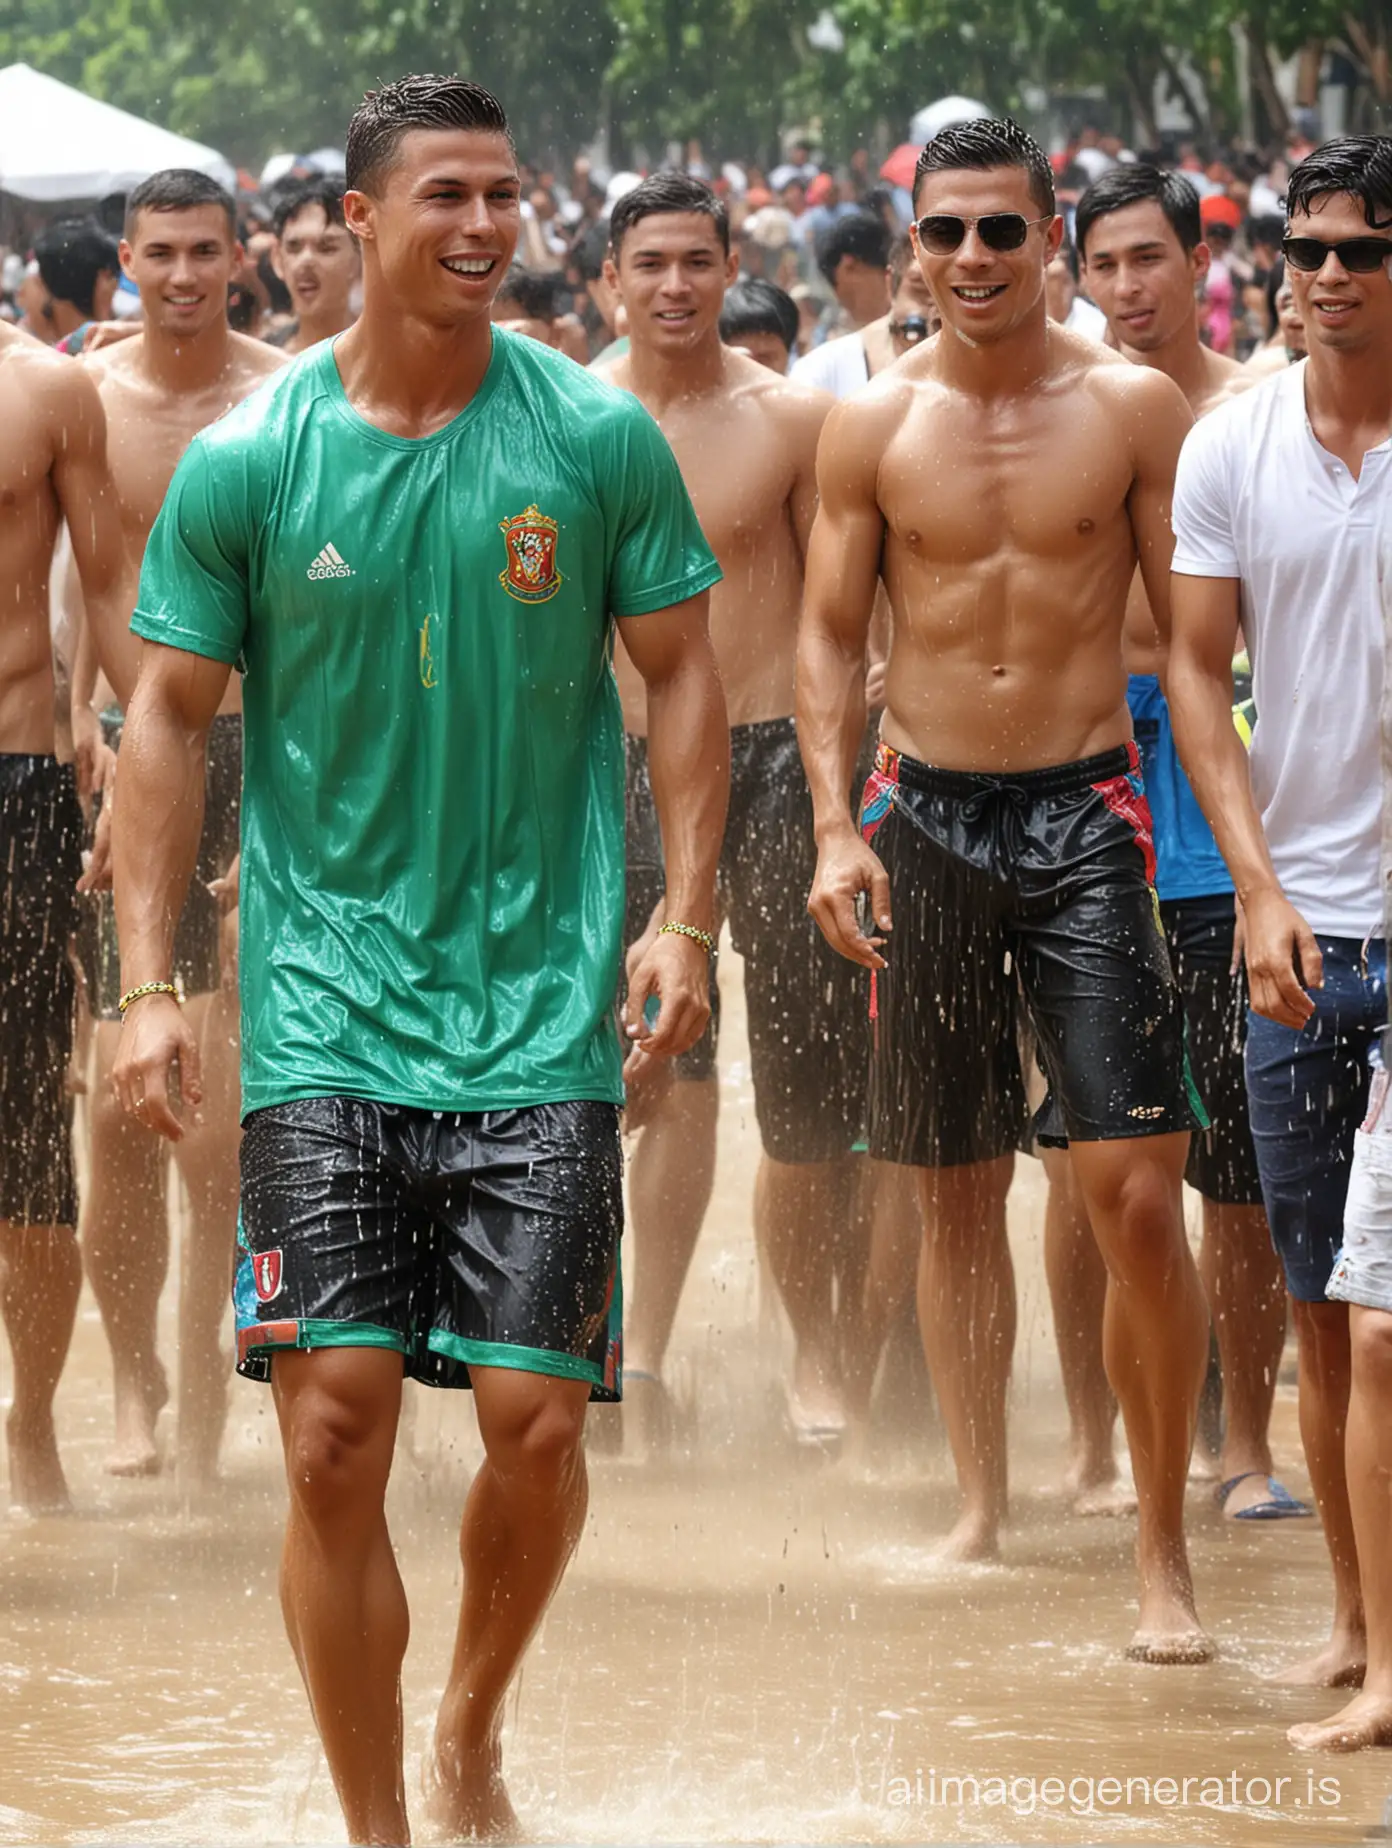 Christiano Ronaldo play Songkran in Thailand